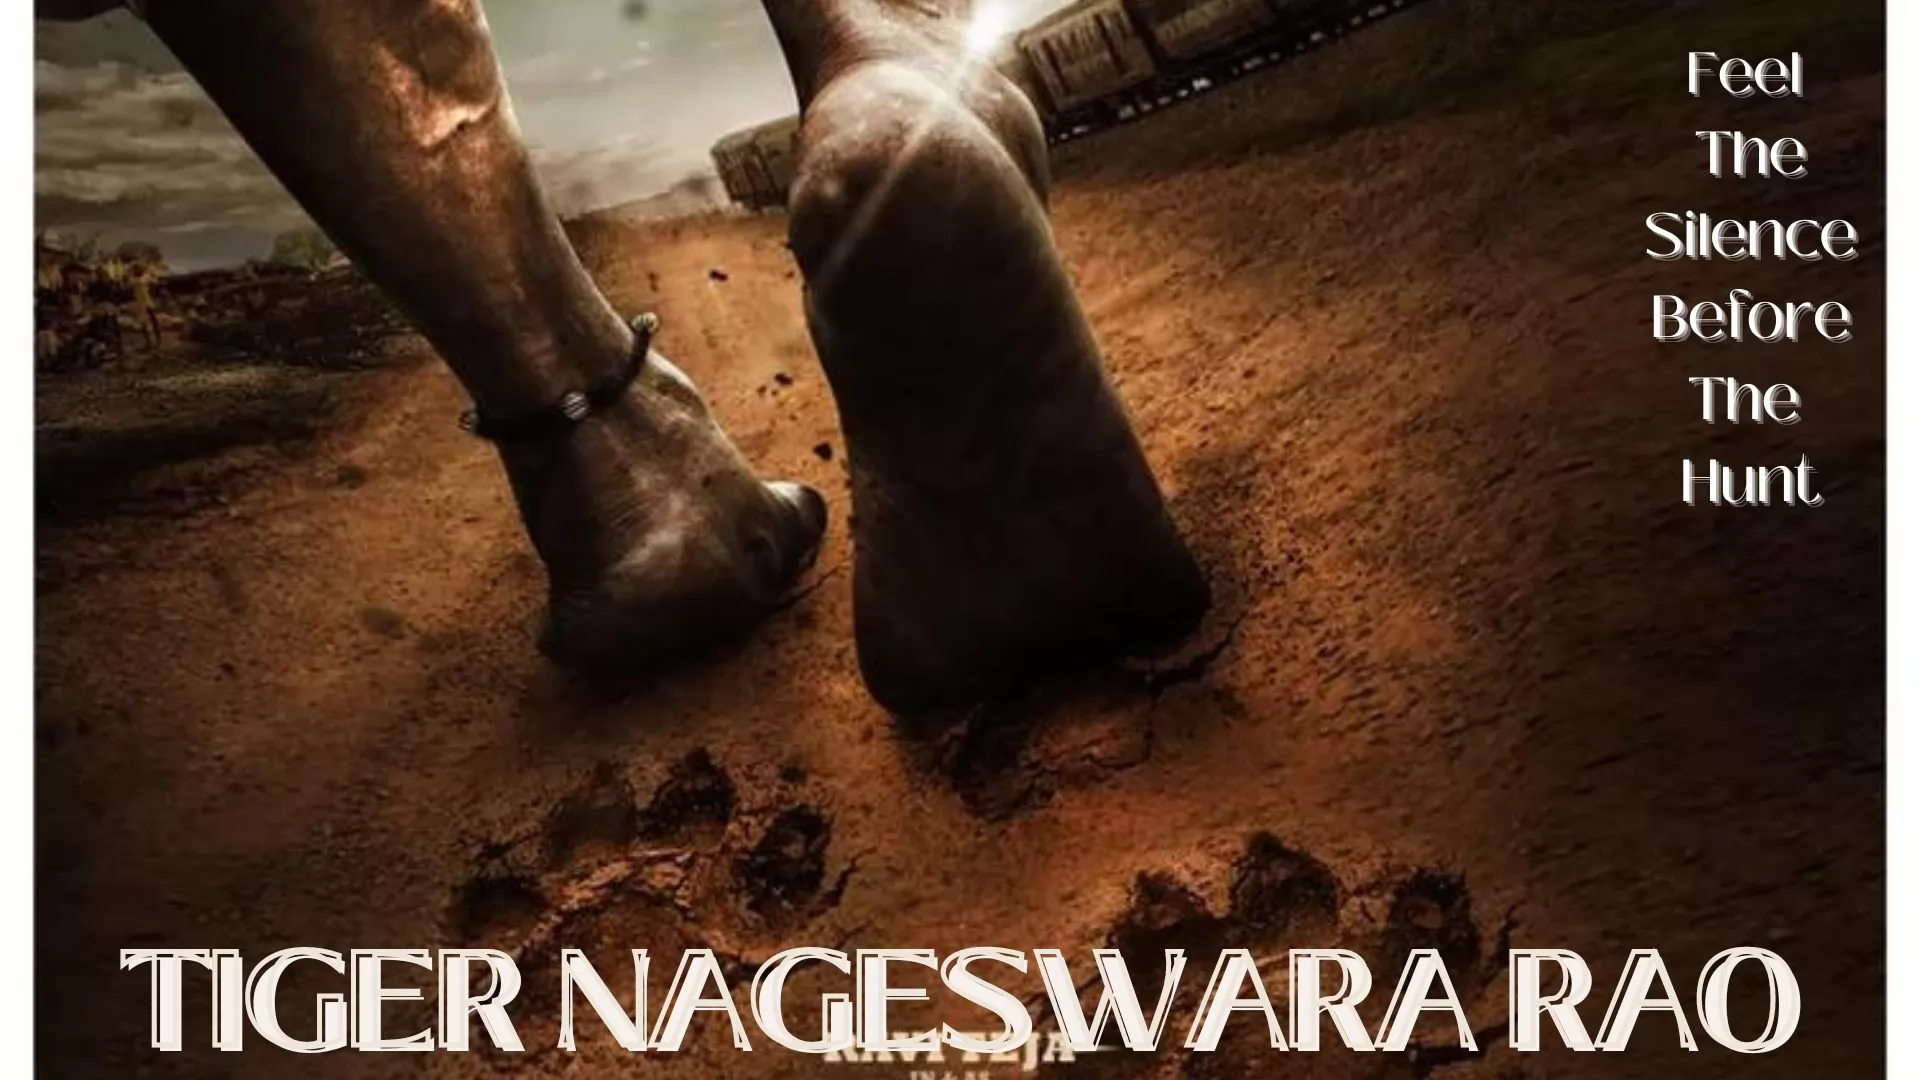 Tiger Nageswara Rao movie